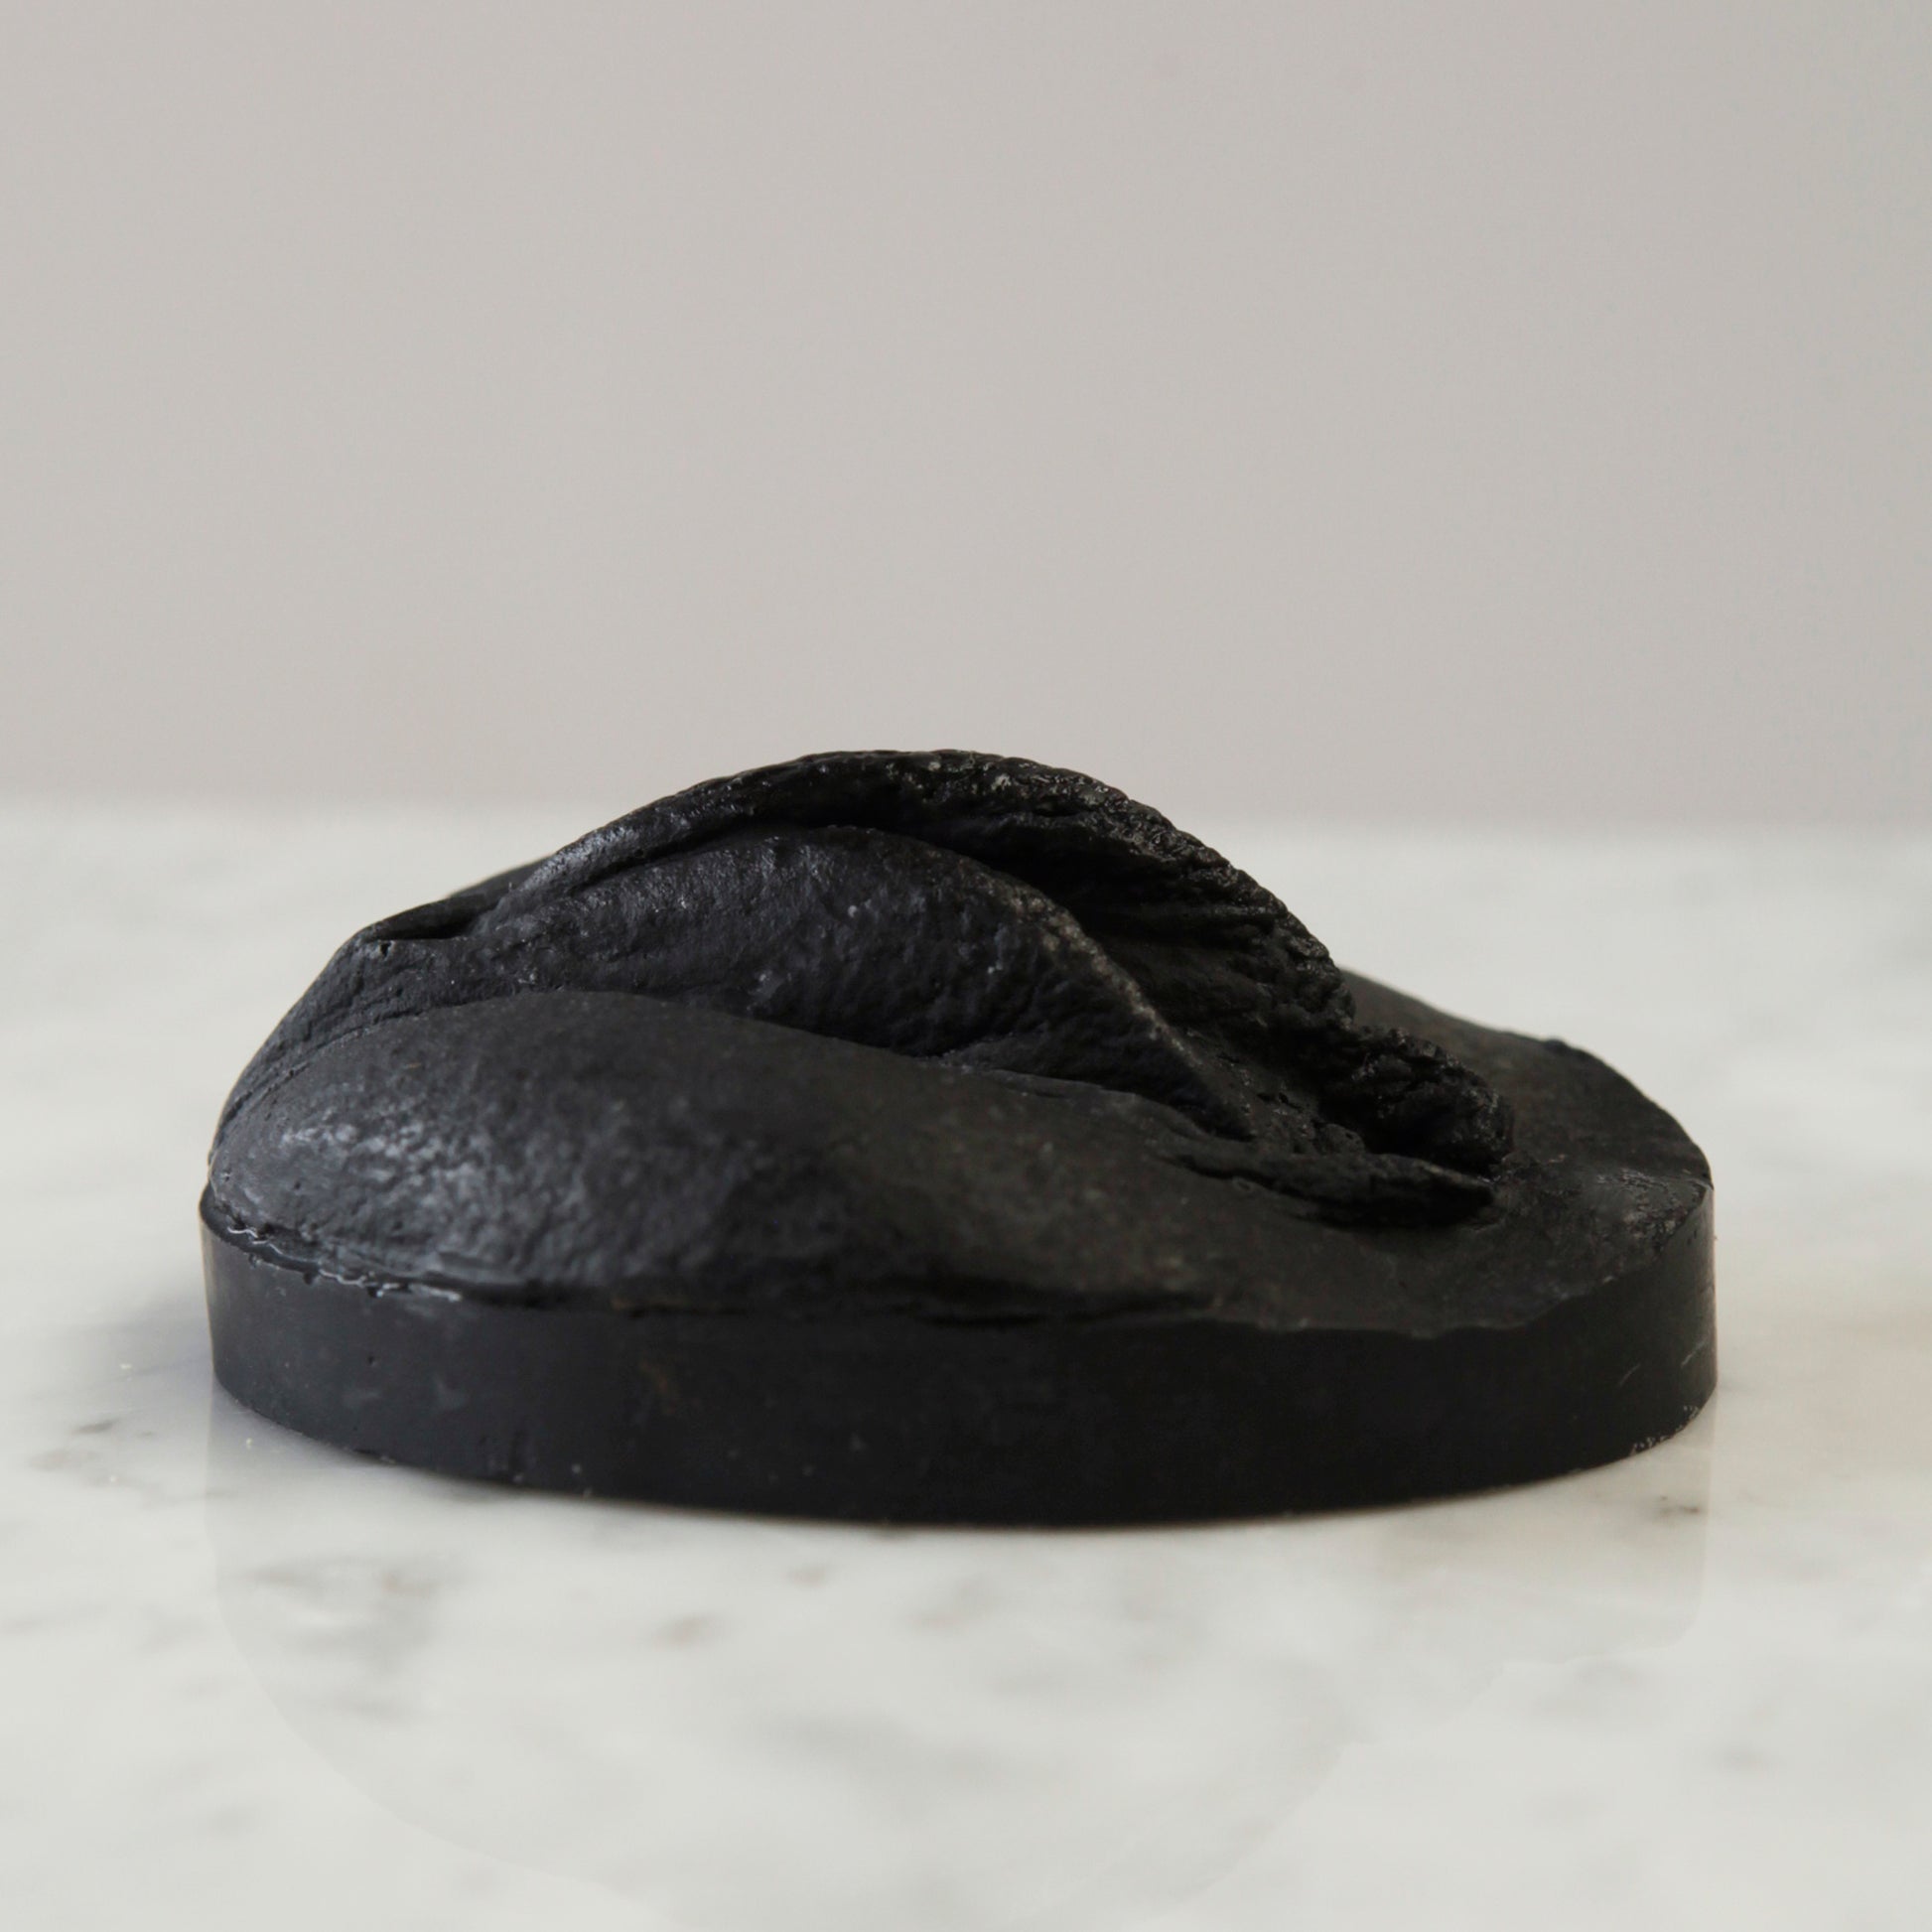 black soap with charcoal and jojoba oil for oily skin, vulva shaped. Seitenansicht der schwarzen Seife, sie ist mit Aktivkohle und Jojobaöl wunderbar geeignet für fettige Haut